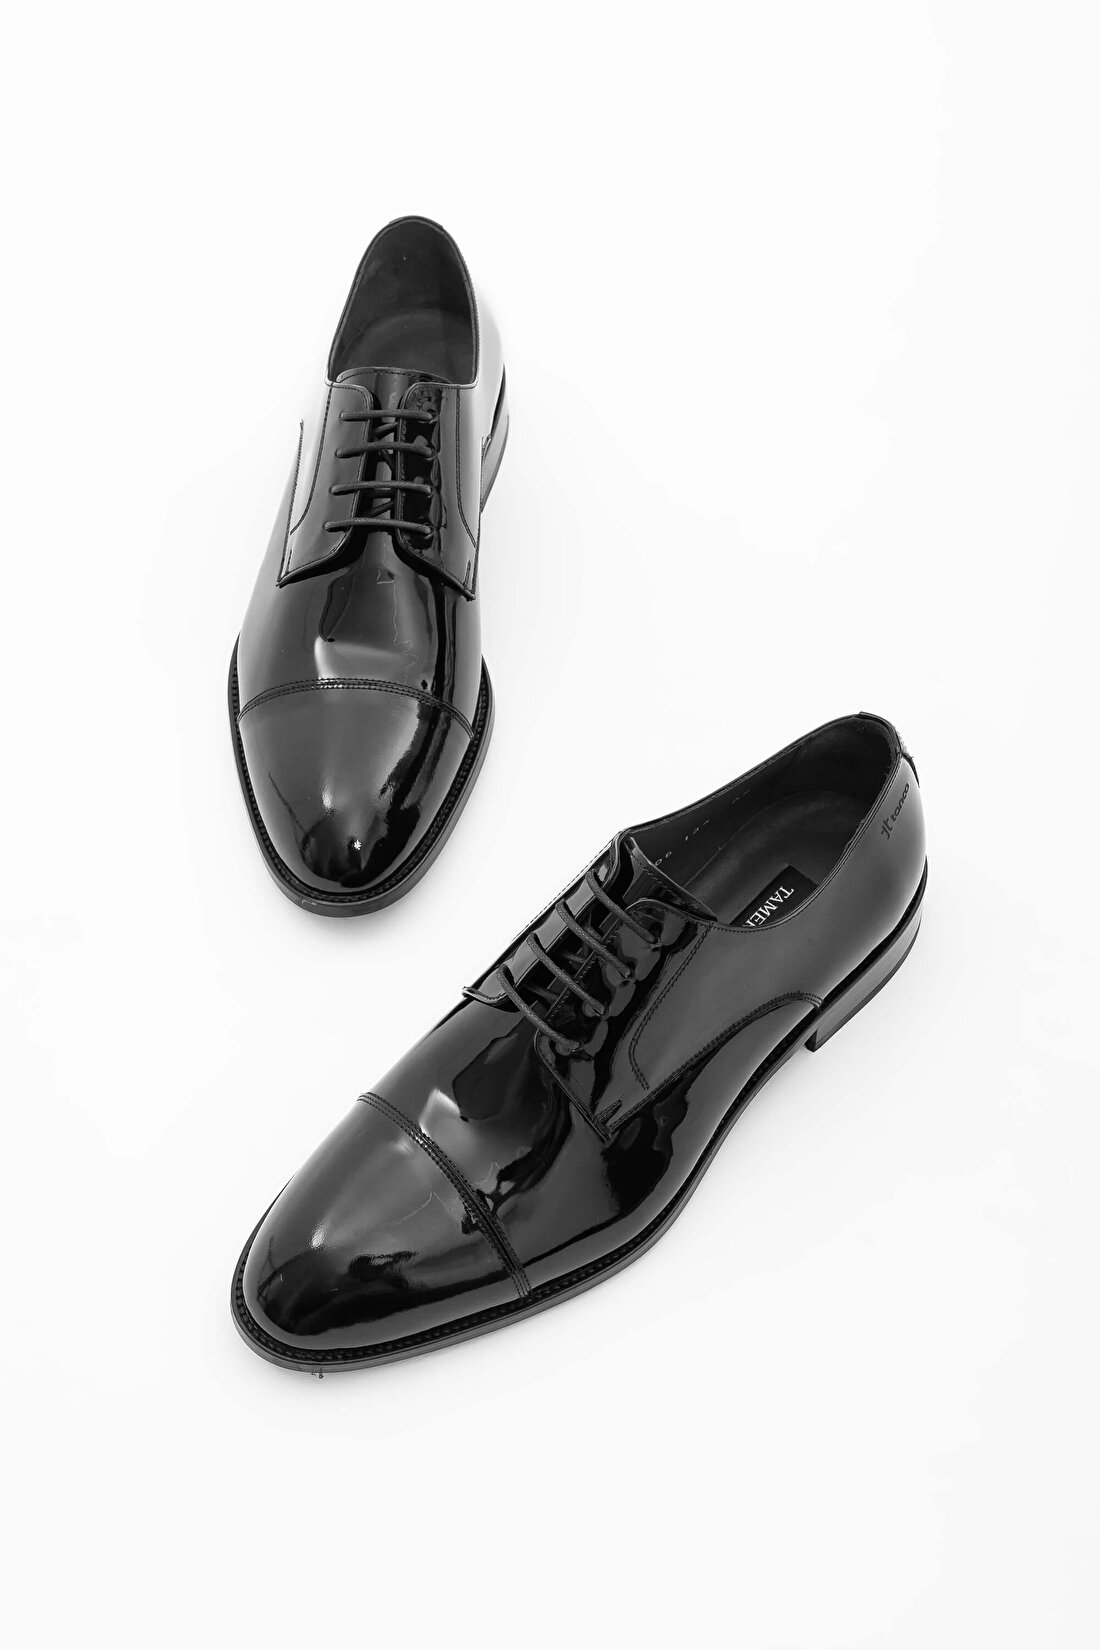 Tamer Tanca Erkek Hakiki Deri Siyah Rugan Klasik Ayakkabı